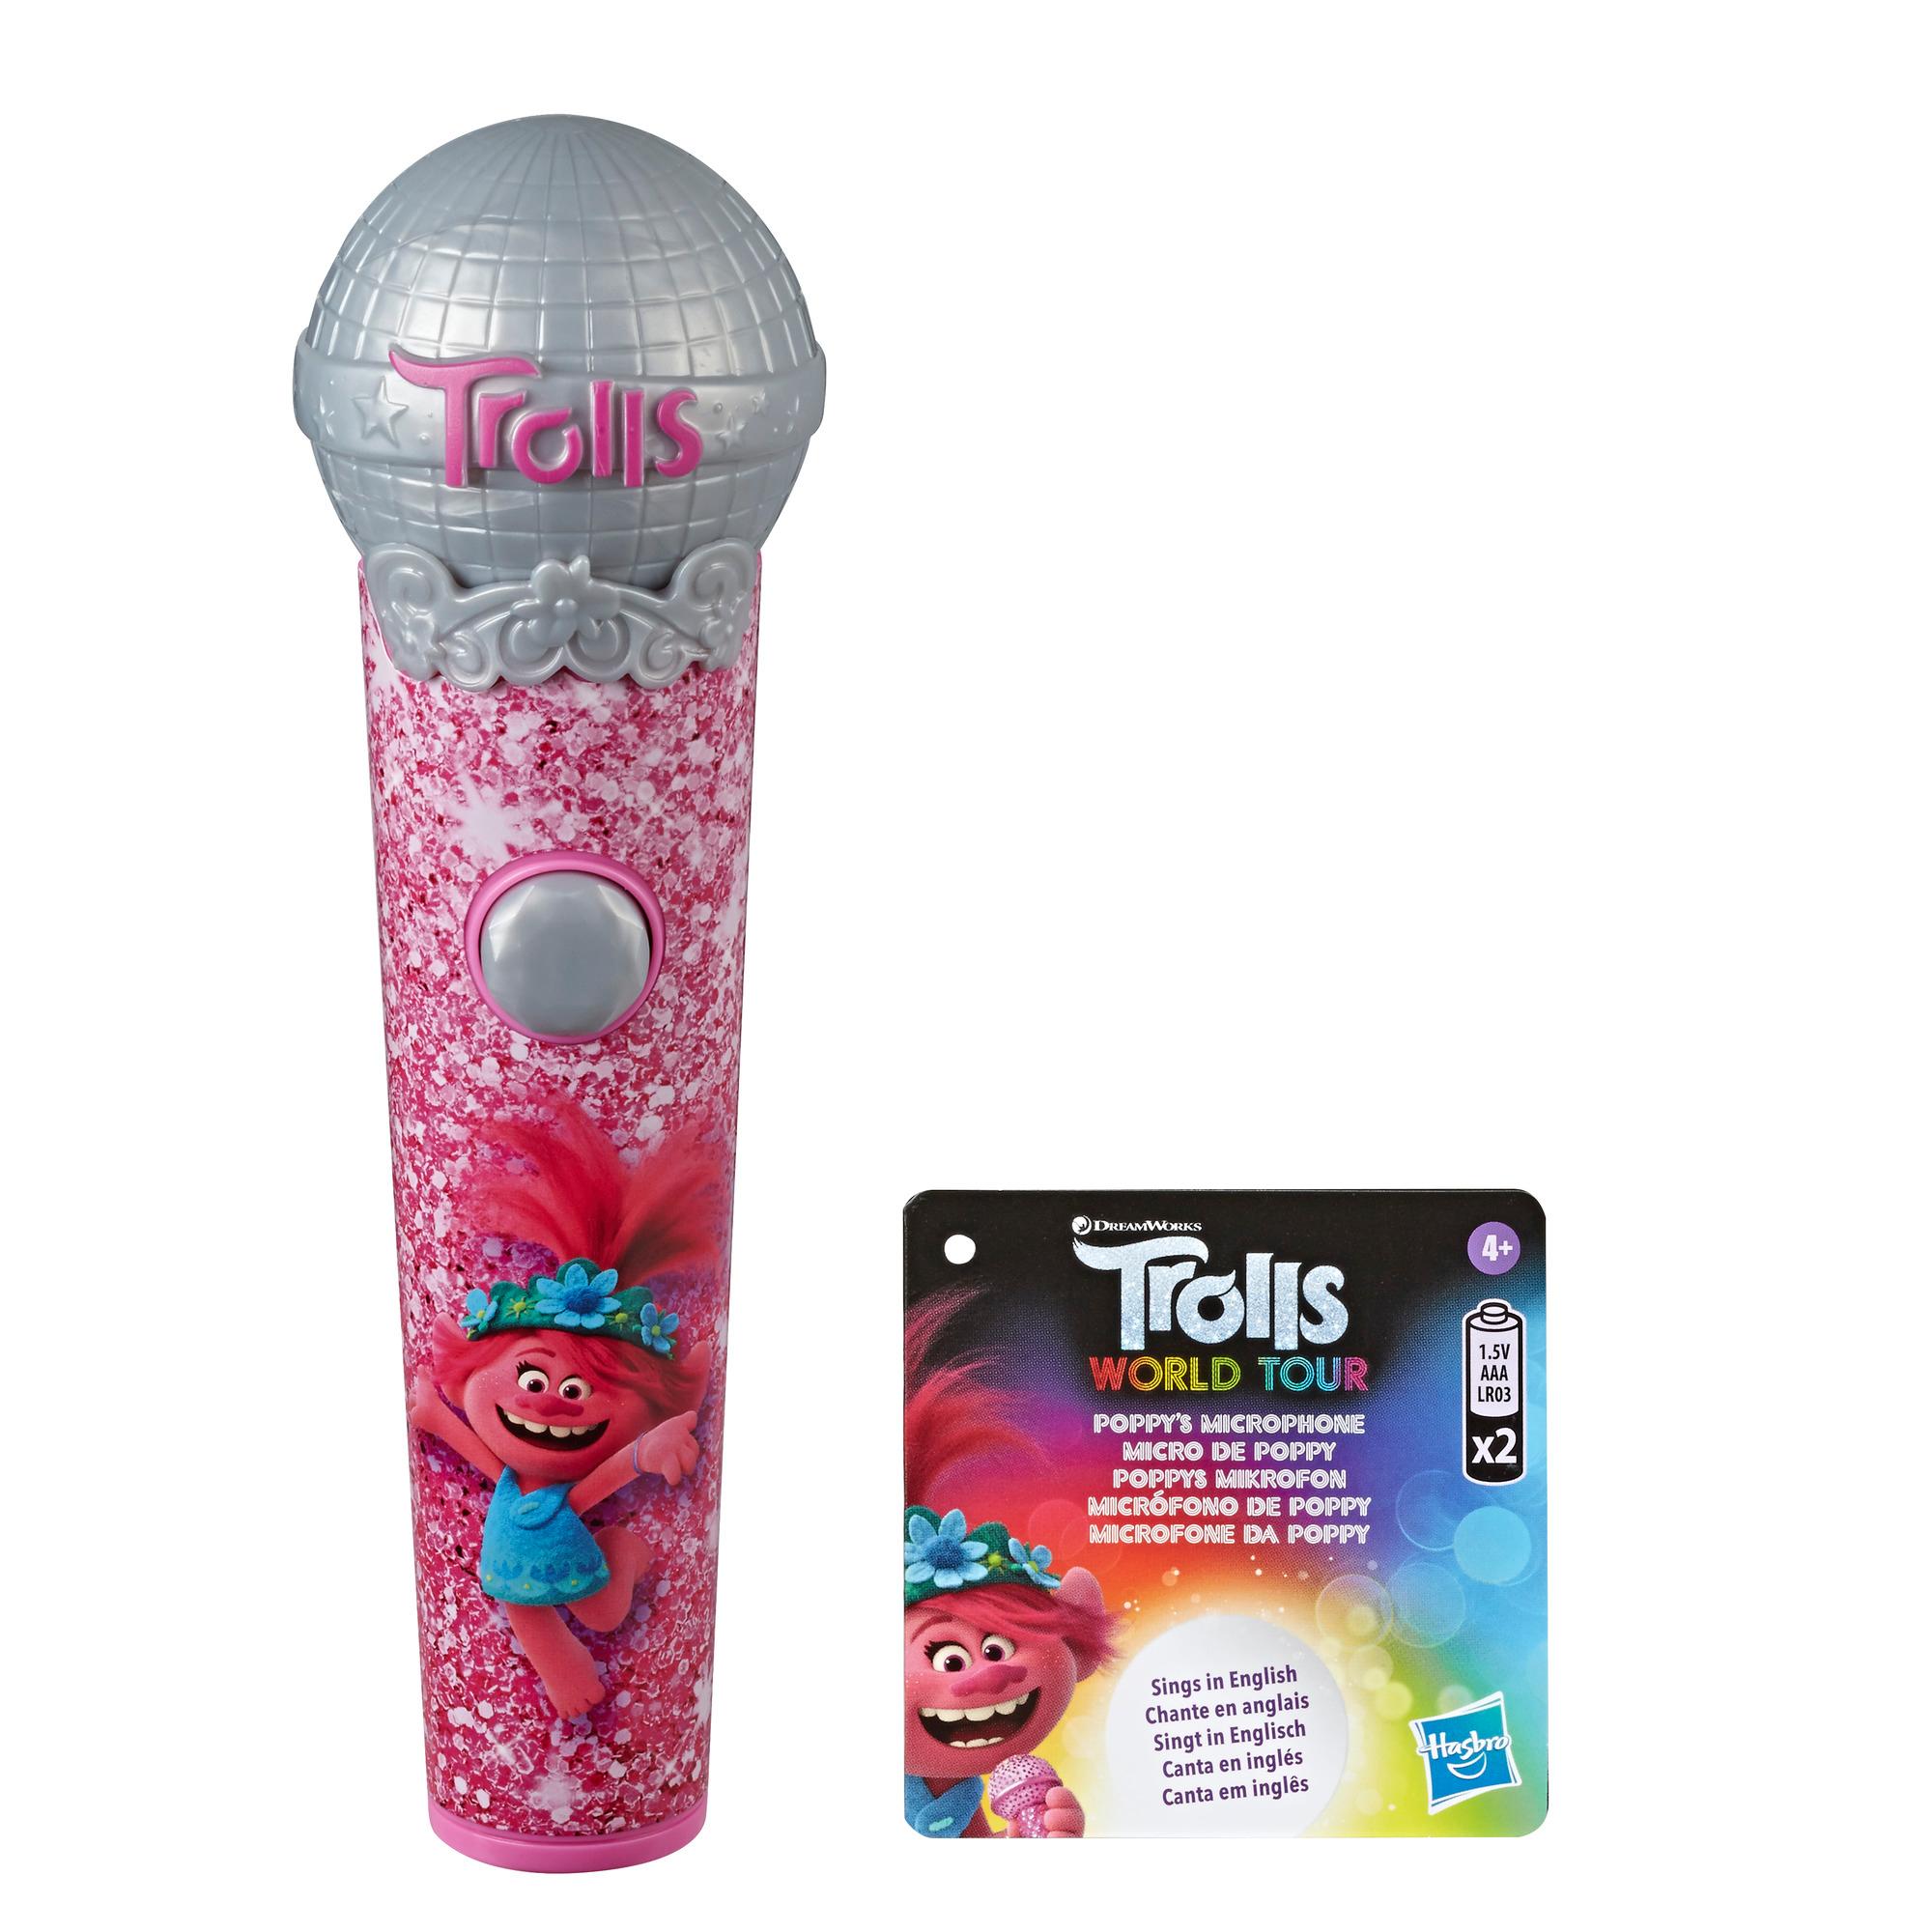 DreamWorks Trolls Poppy's microfoon, muziekspeelgoed met lichtjes en geluid, speelt 5 nummers uit de film Trolls World Tour